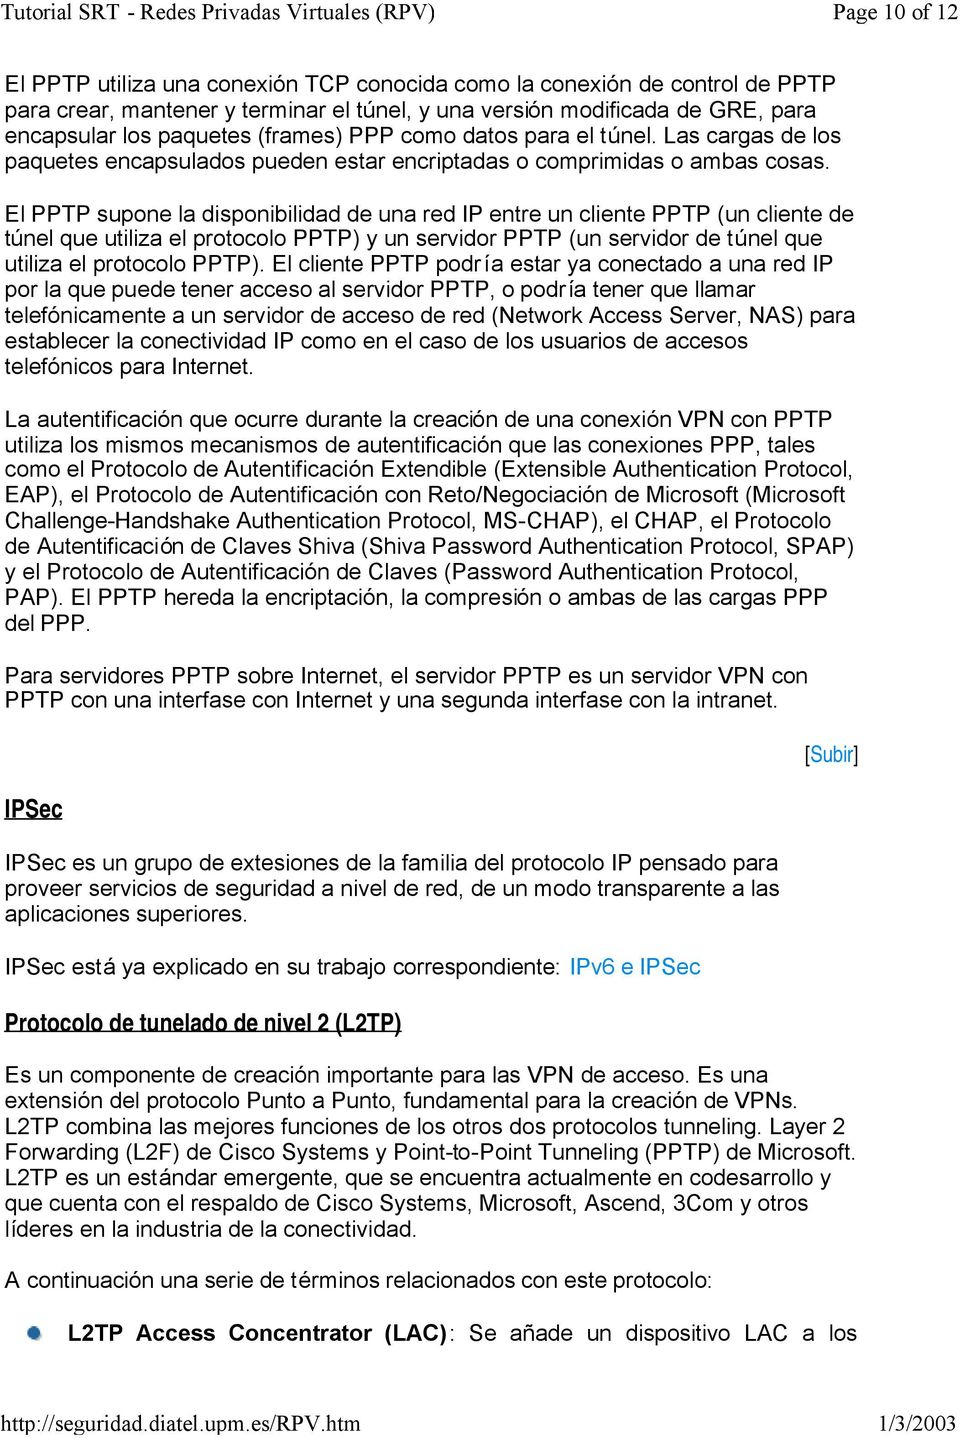 El PPTP supone la disponibilidad de una red IP entre un cliente PPTP (un cliente de túnel que utiliza el protocolo PPTP) y un servidor PPTP (un servidor de túnel que utiliza el protocolo PPTP).